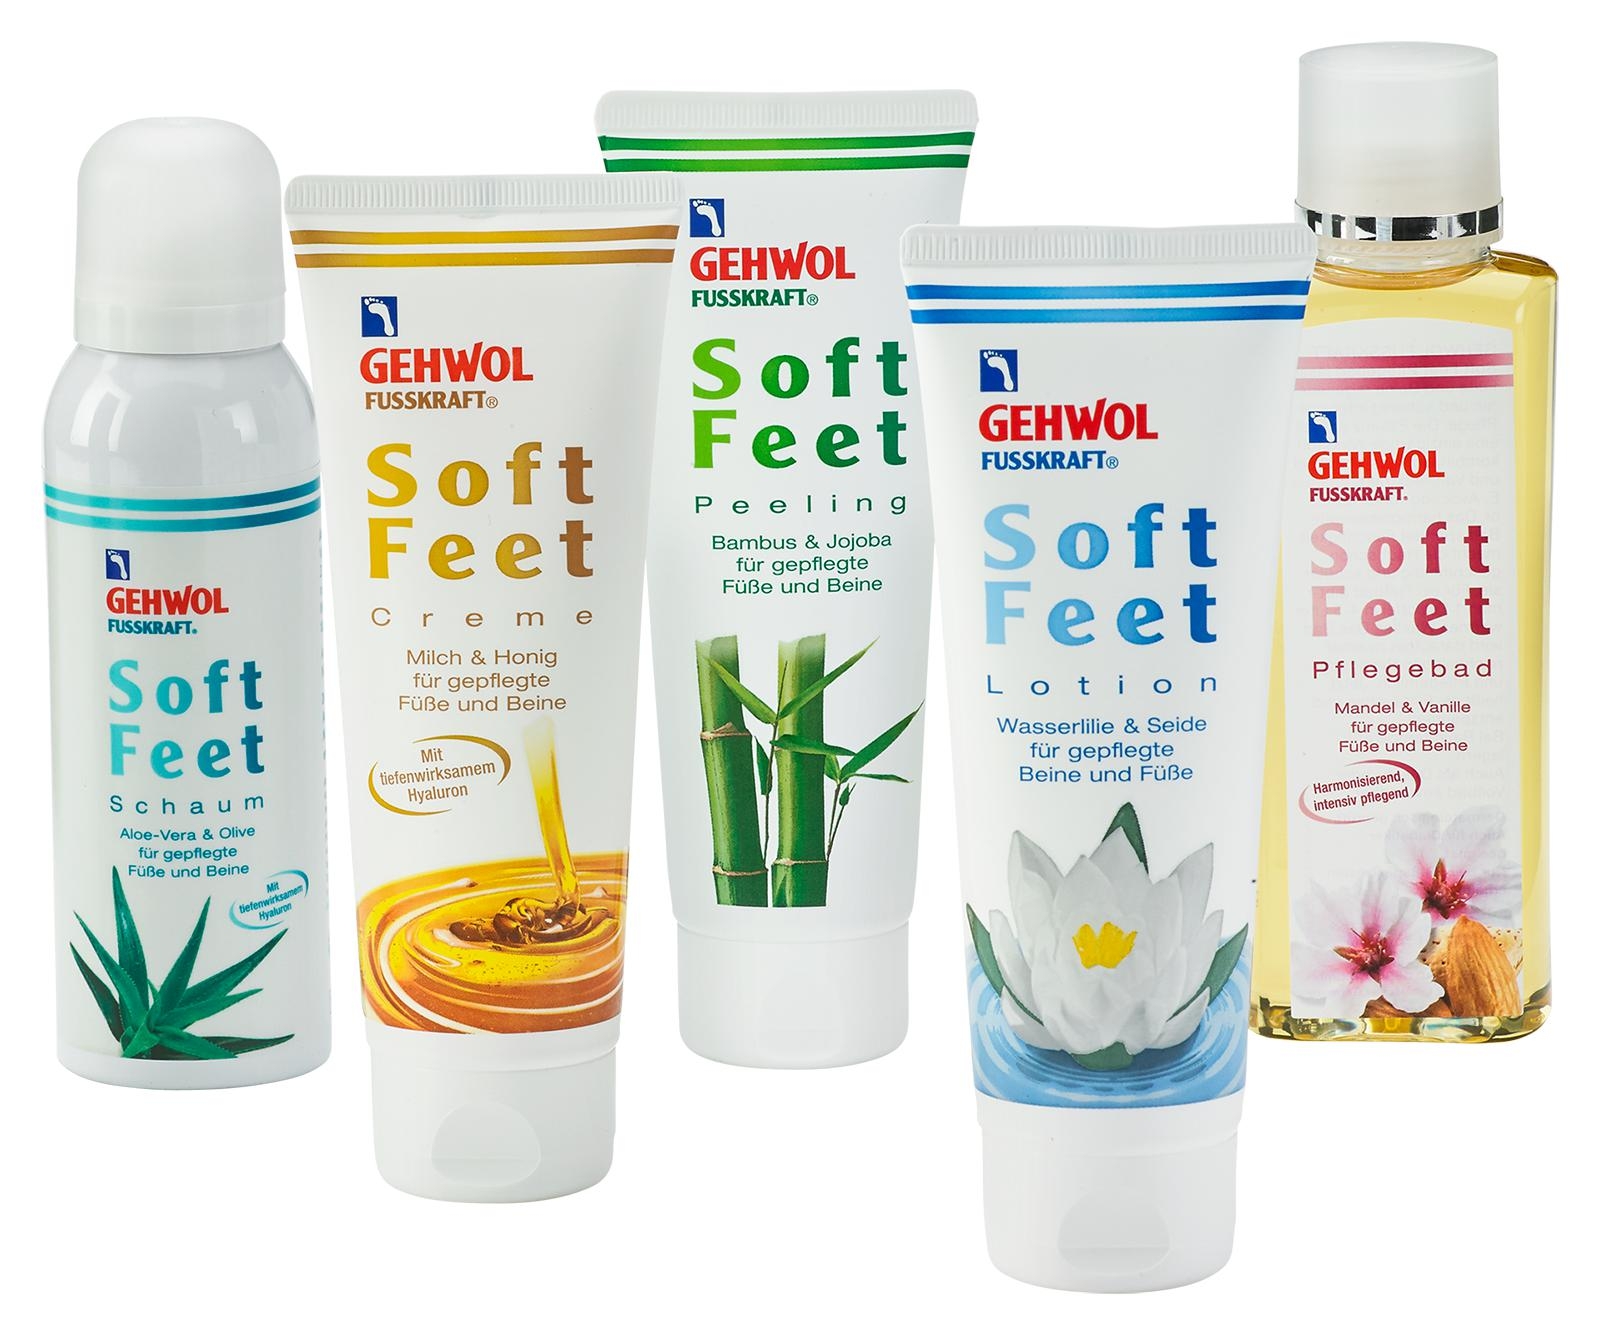 GEHWOL FUSSKRAFT Soft Feet Lotion 500 ml